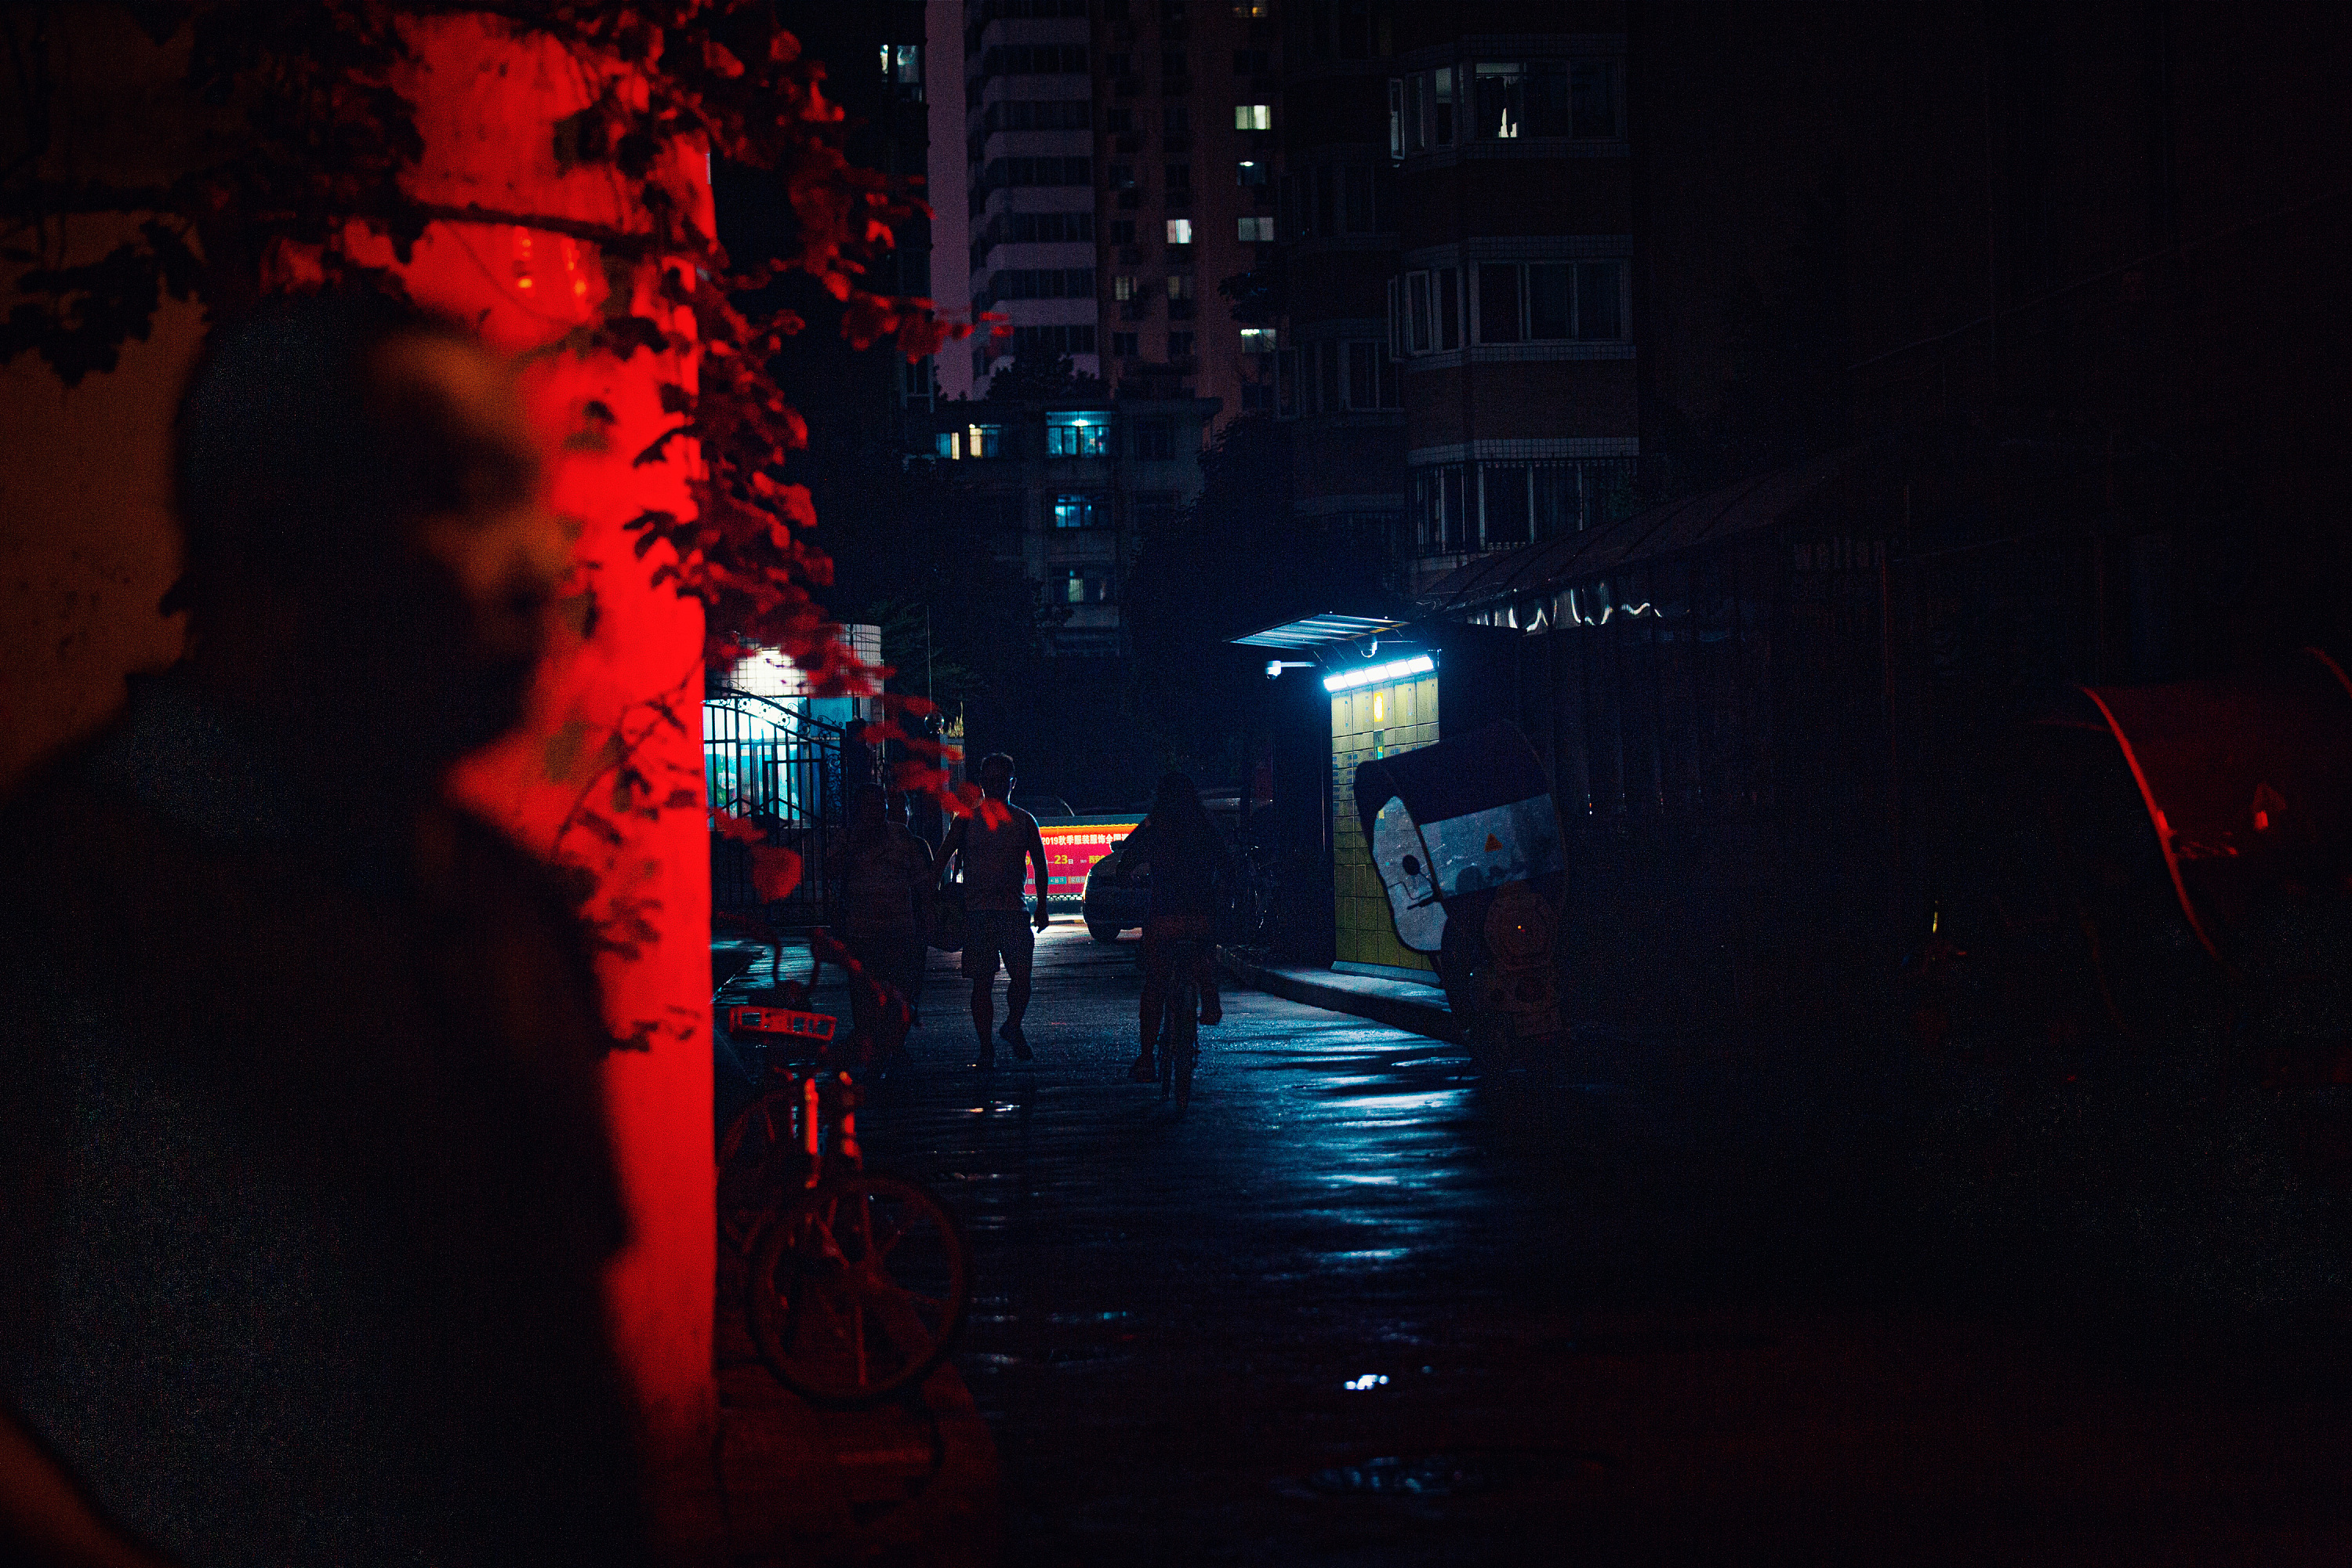 孤独的街道夜晚图片 夜晚街道图片 - 电影天堂